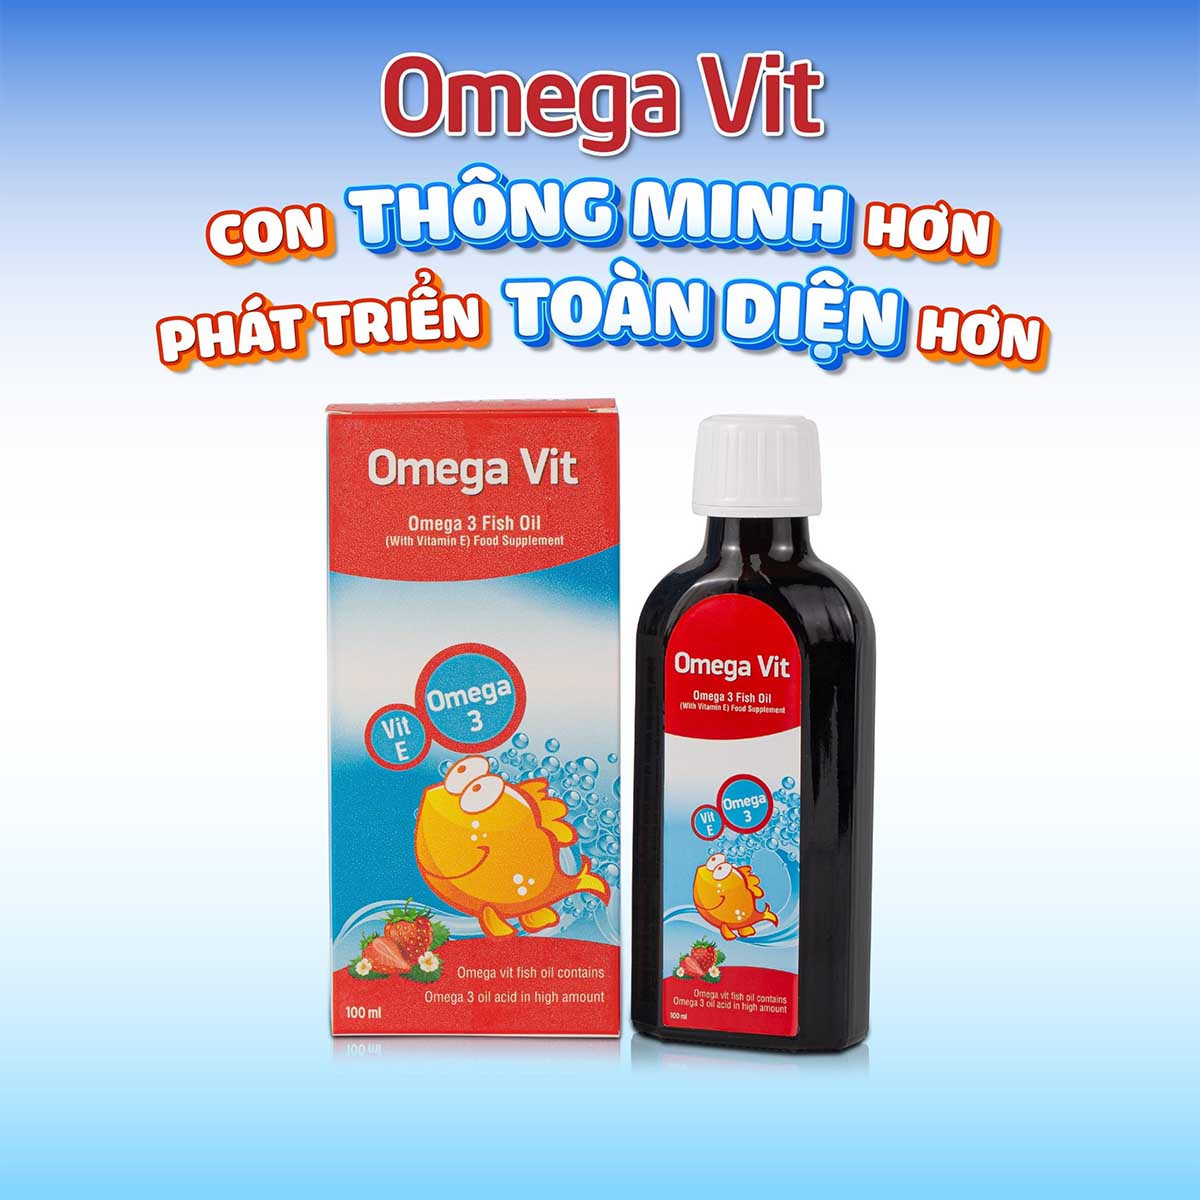 Omega Vit chứa omega 3 tinh khiết và đậm đặc cho trẻ